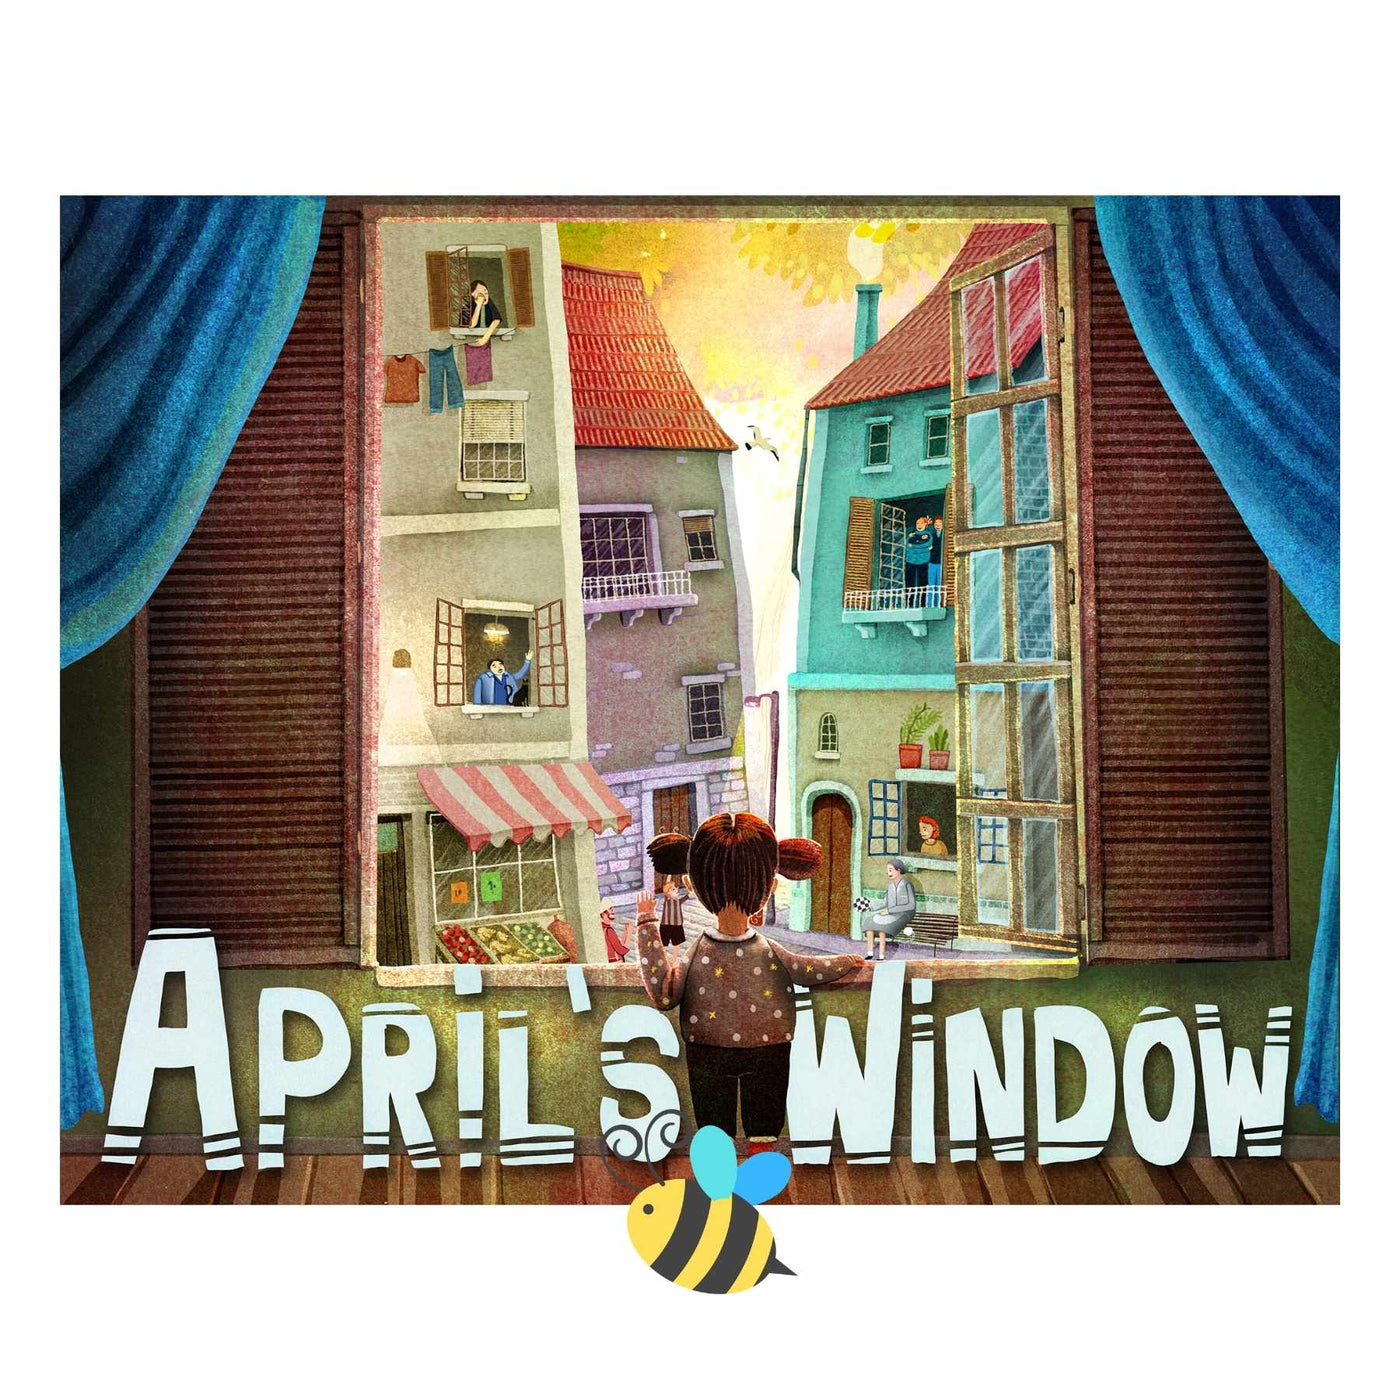 April's Window Book Ethicool 